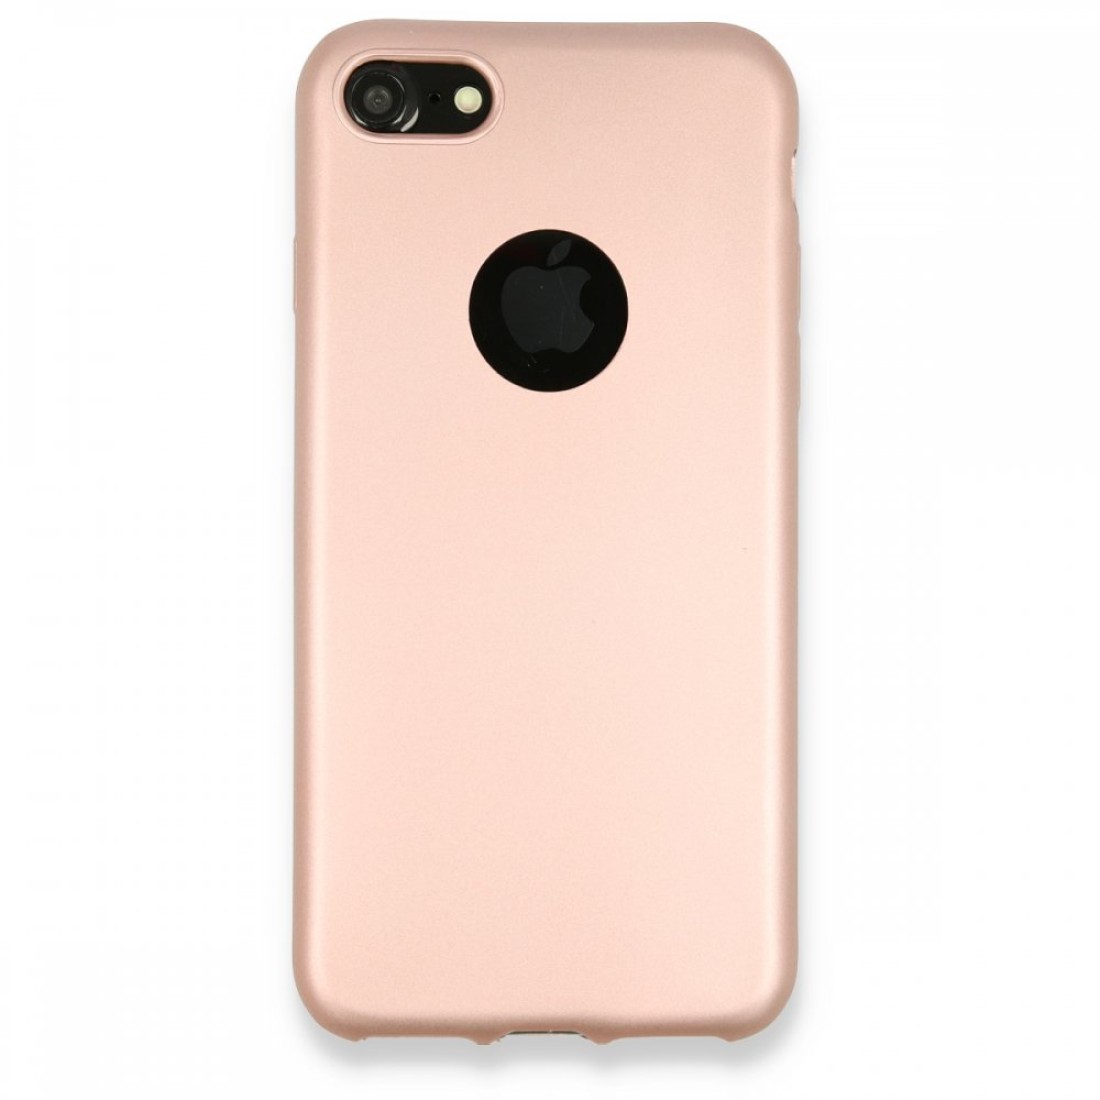 Apple iPhone 7 Kılıf Premium Rubber Silikon - Rose Gold